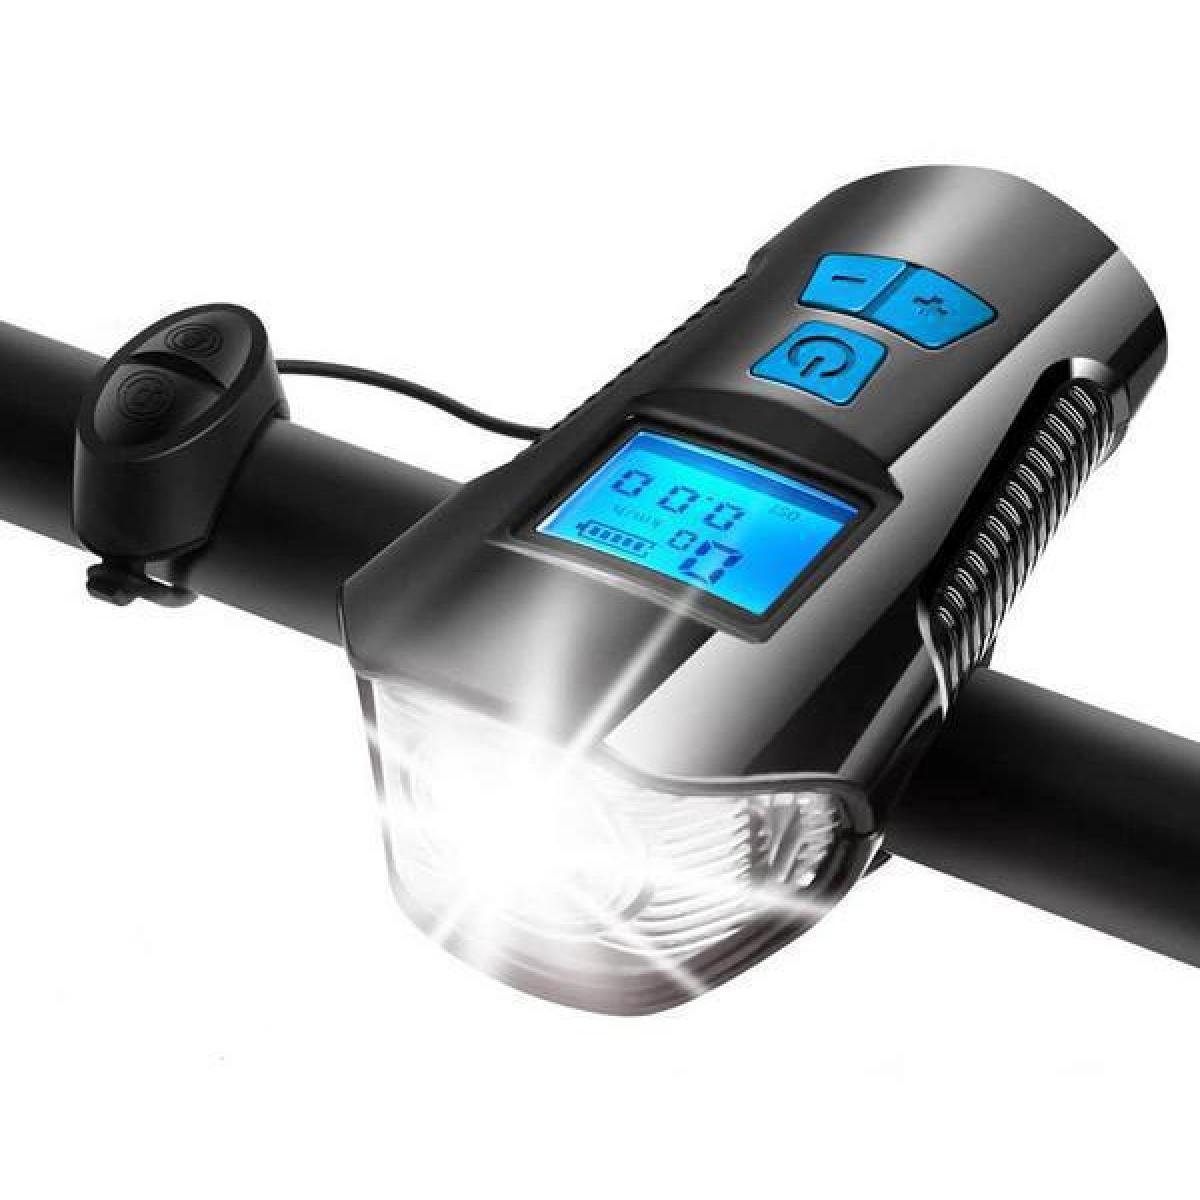 Ψηφιακό Ταχύμετρο - Κοντέρ Ποδηλάτου  Με Προβολέα Led , Κόρνα, Led Πορείας & Επαναφορτιζόμενη Μπαταρία 1500 mAh CBL-1X